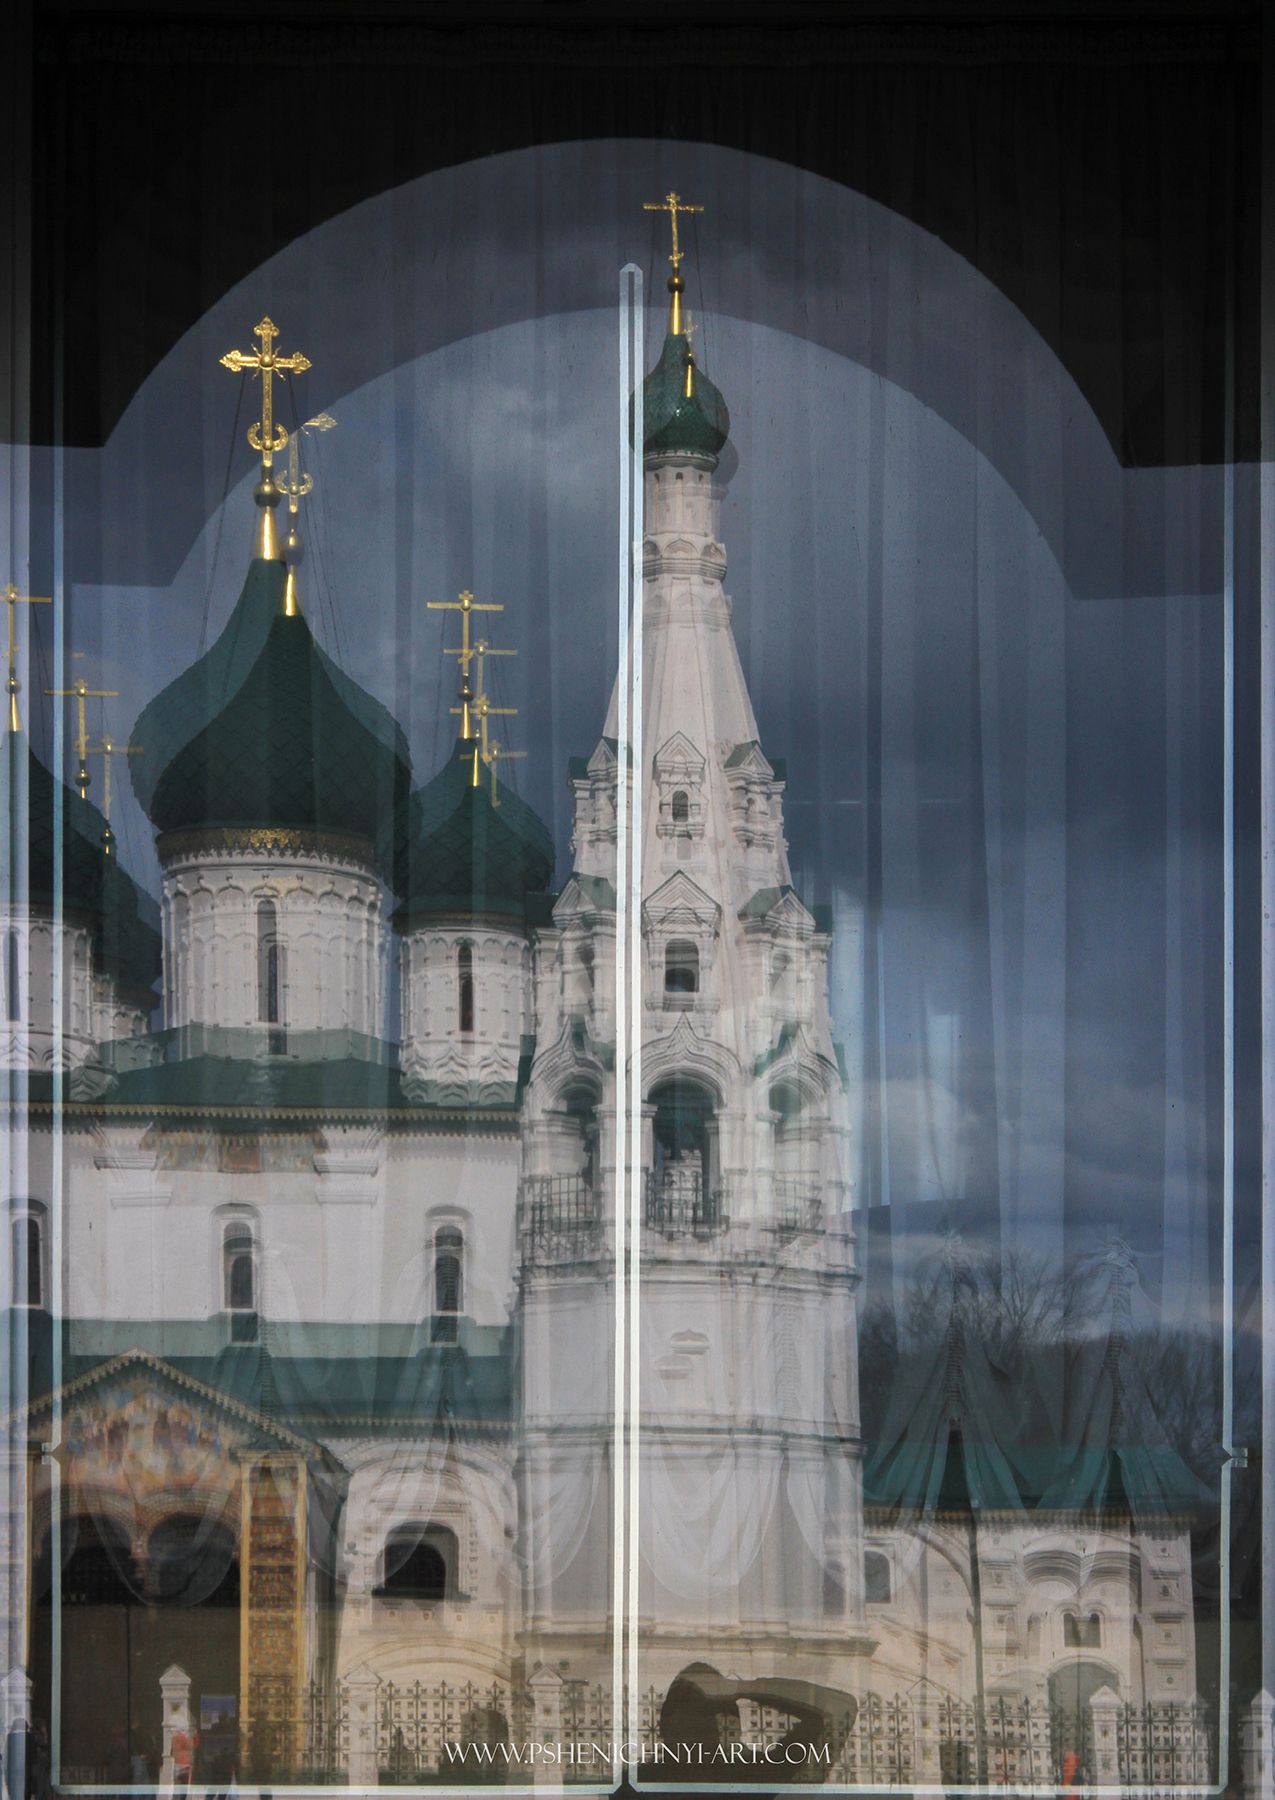 храм, ярославль, россия, отражение, купола, окно, арка, Пшеничный Андрей